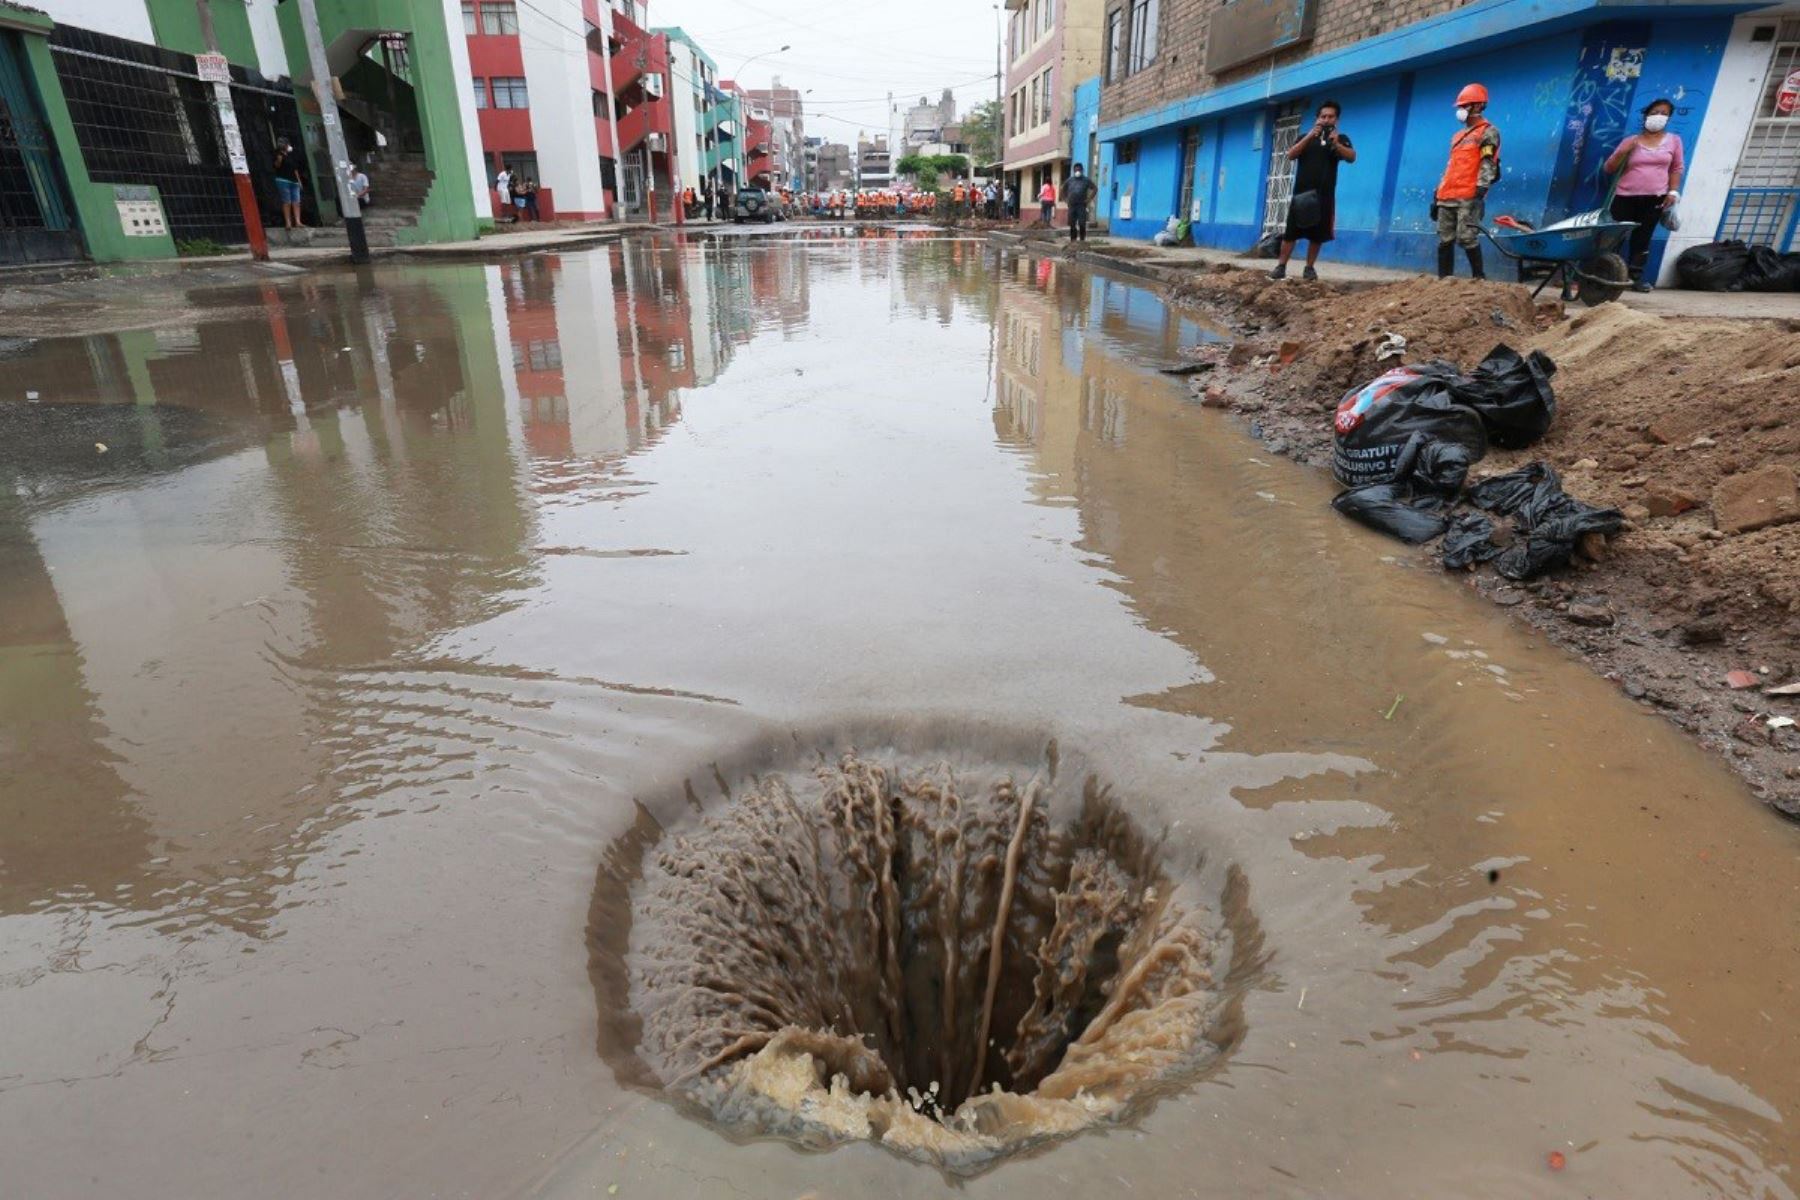 Usar los desagües para drenar el agua de lluvia empozada puede orignar el colapso del sistema de alcantarillado, advirtió la Sunass. Foto: Sunass/Difusión.